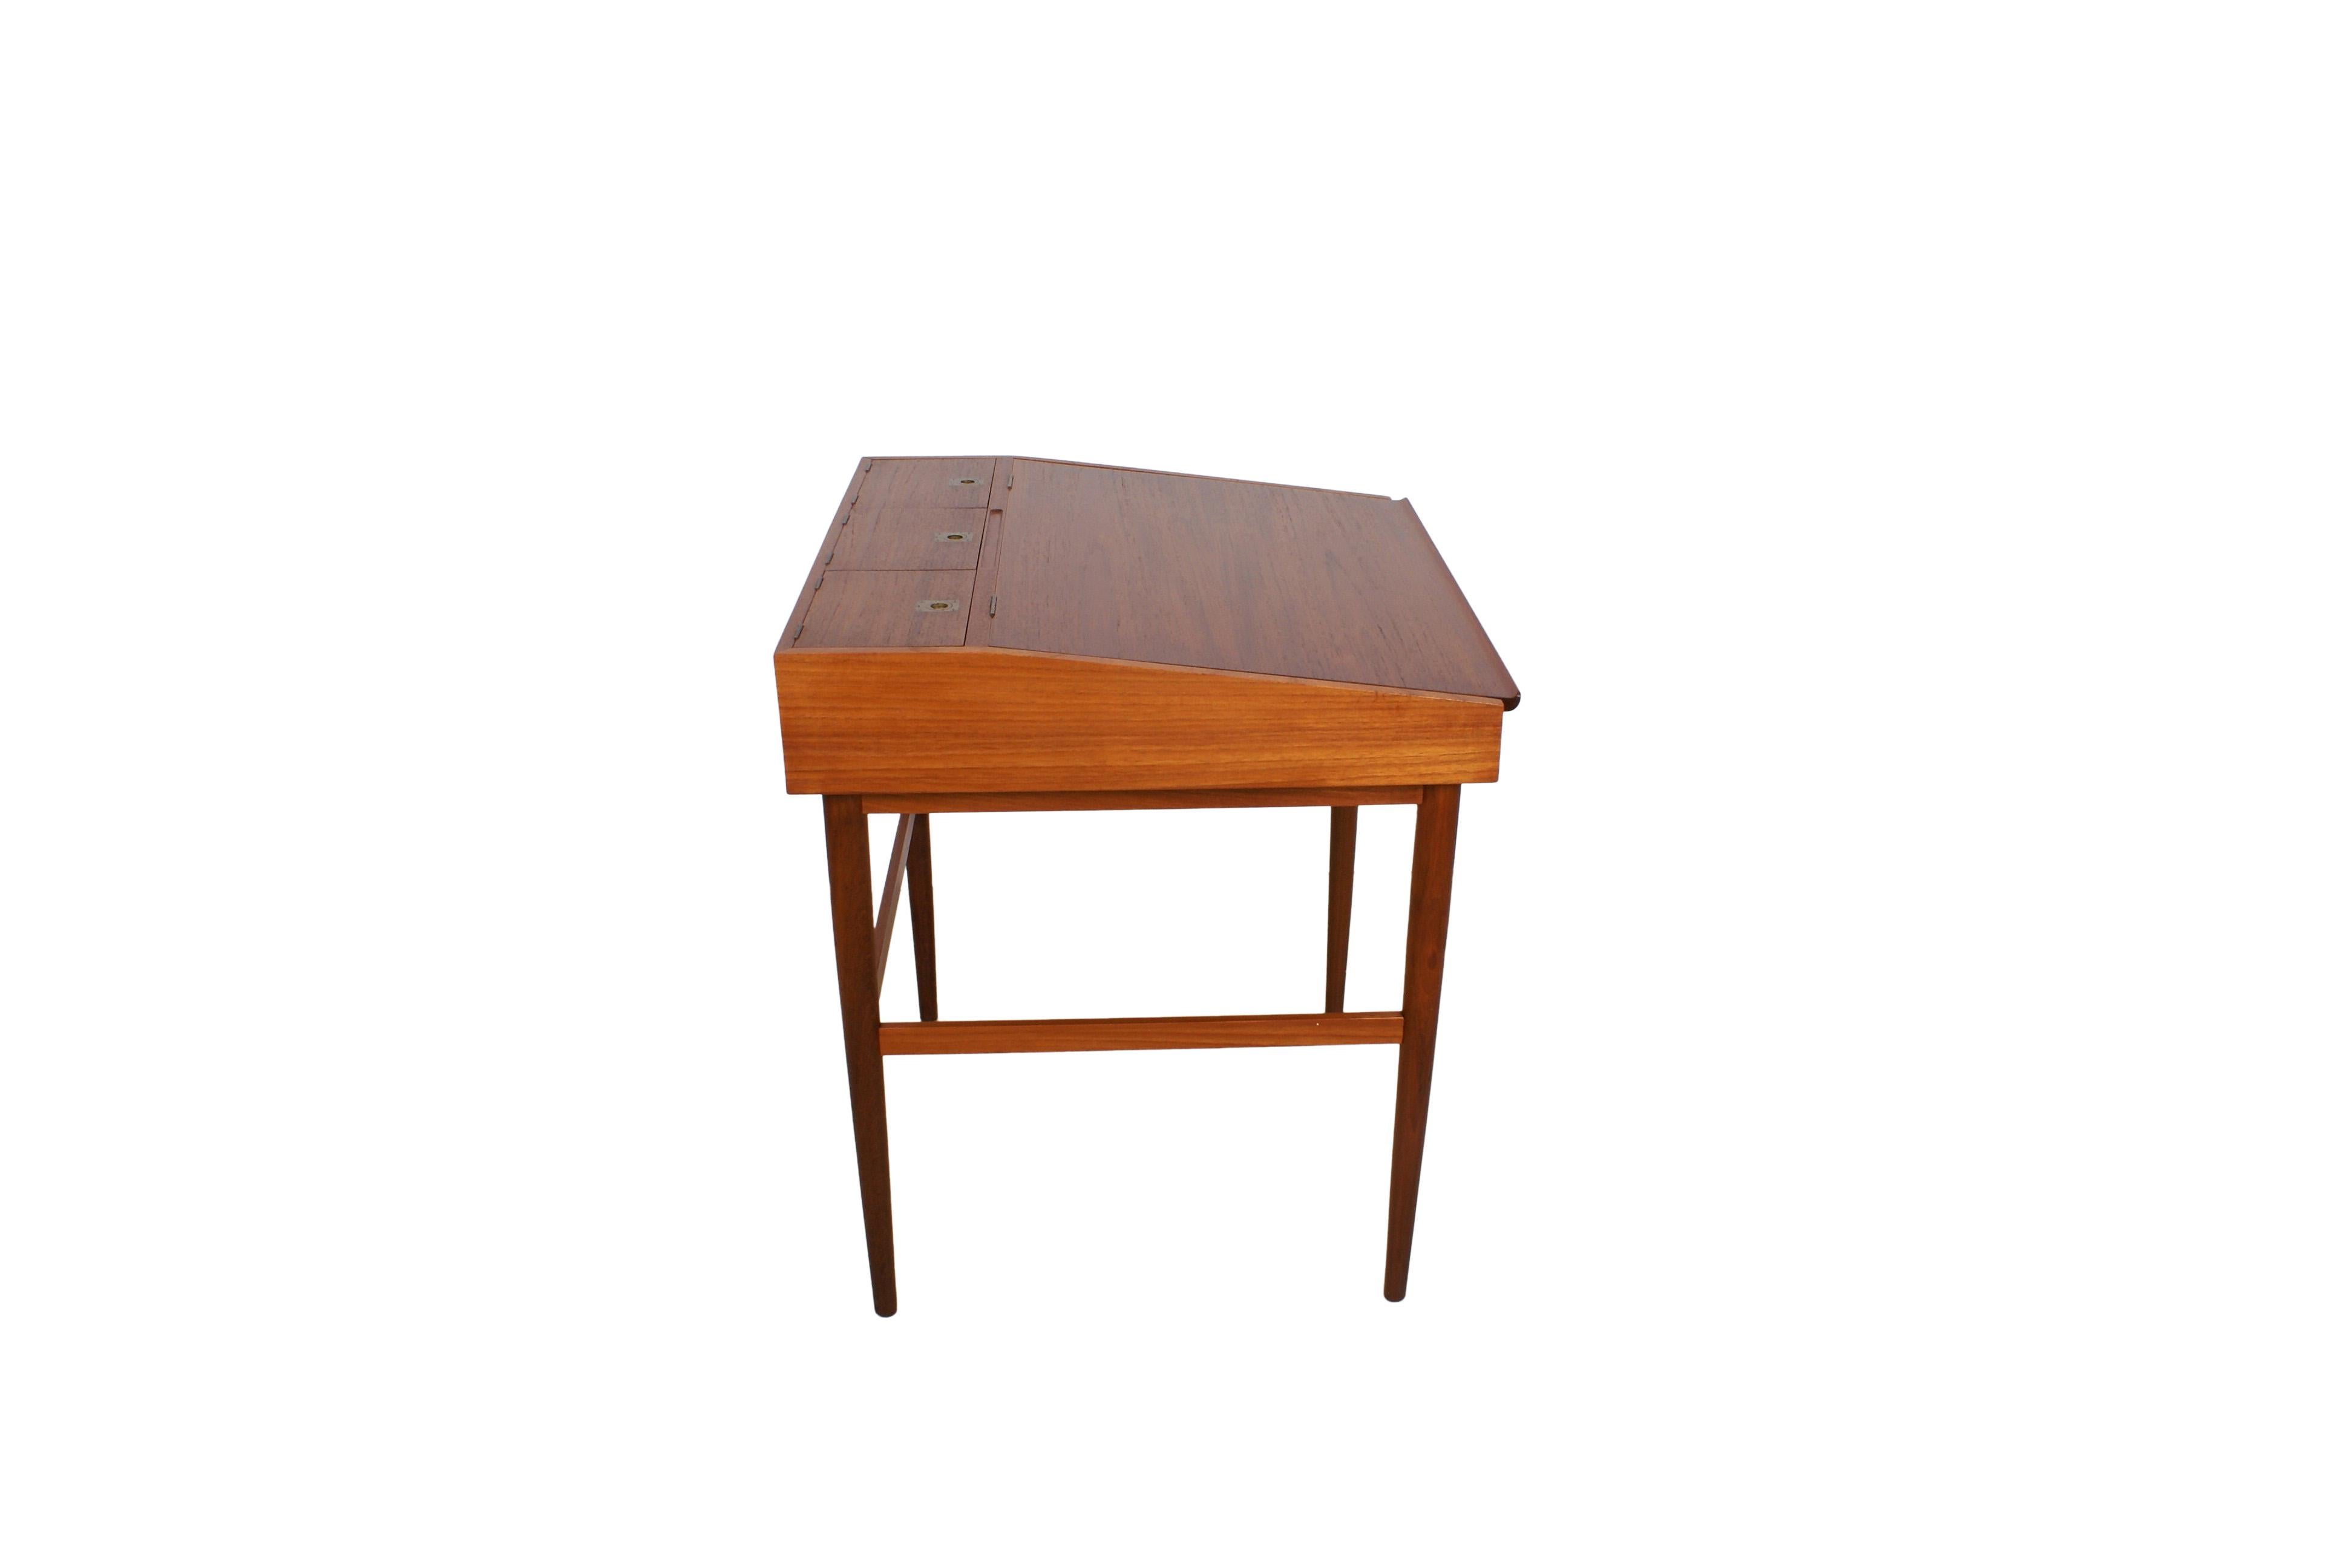 Finn Juhl NV-40 Desk for Niels Vodder in Teak, 1940 For Sale 2